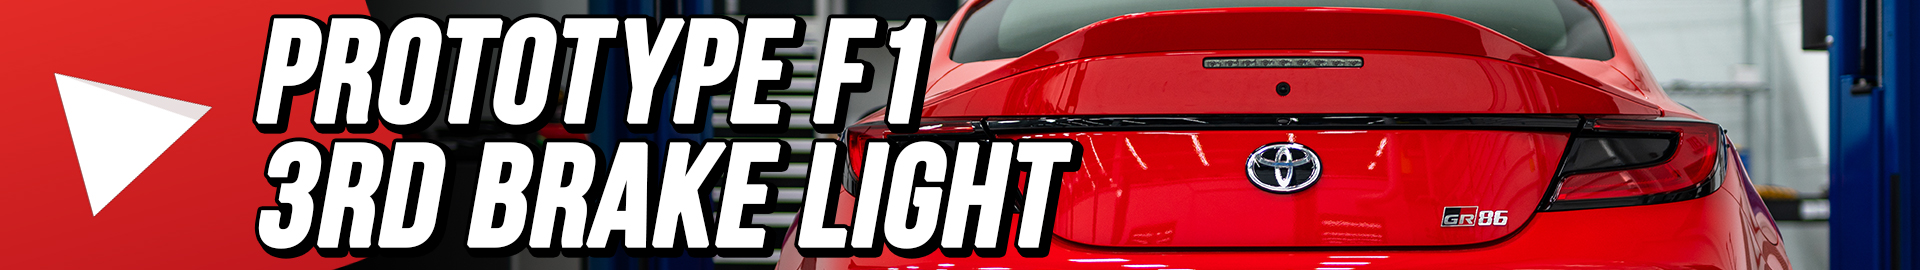 F1 3rd Brake Light Teaser I 2 s g 3nnB 1T A 